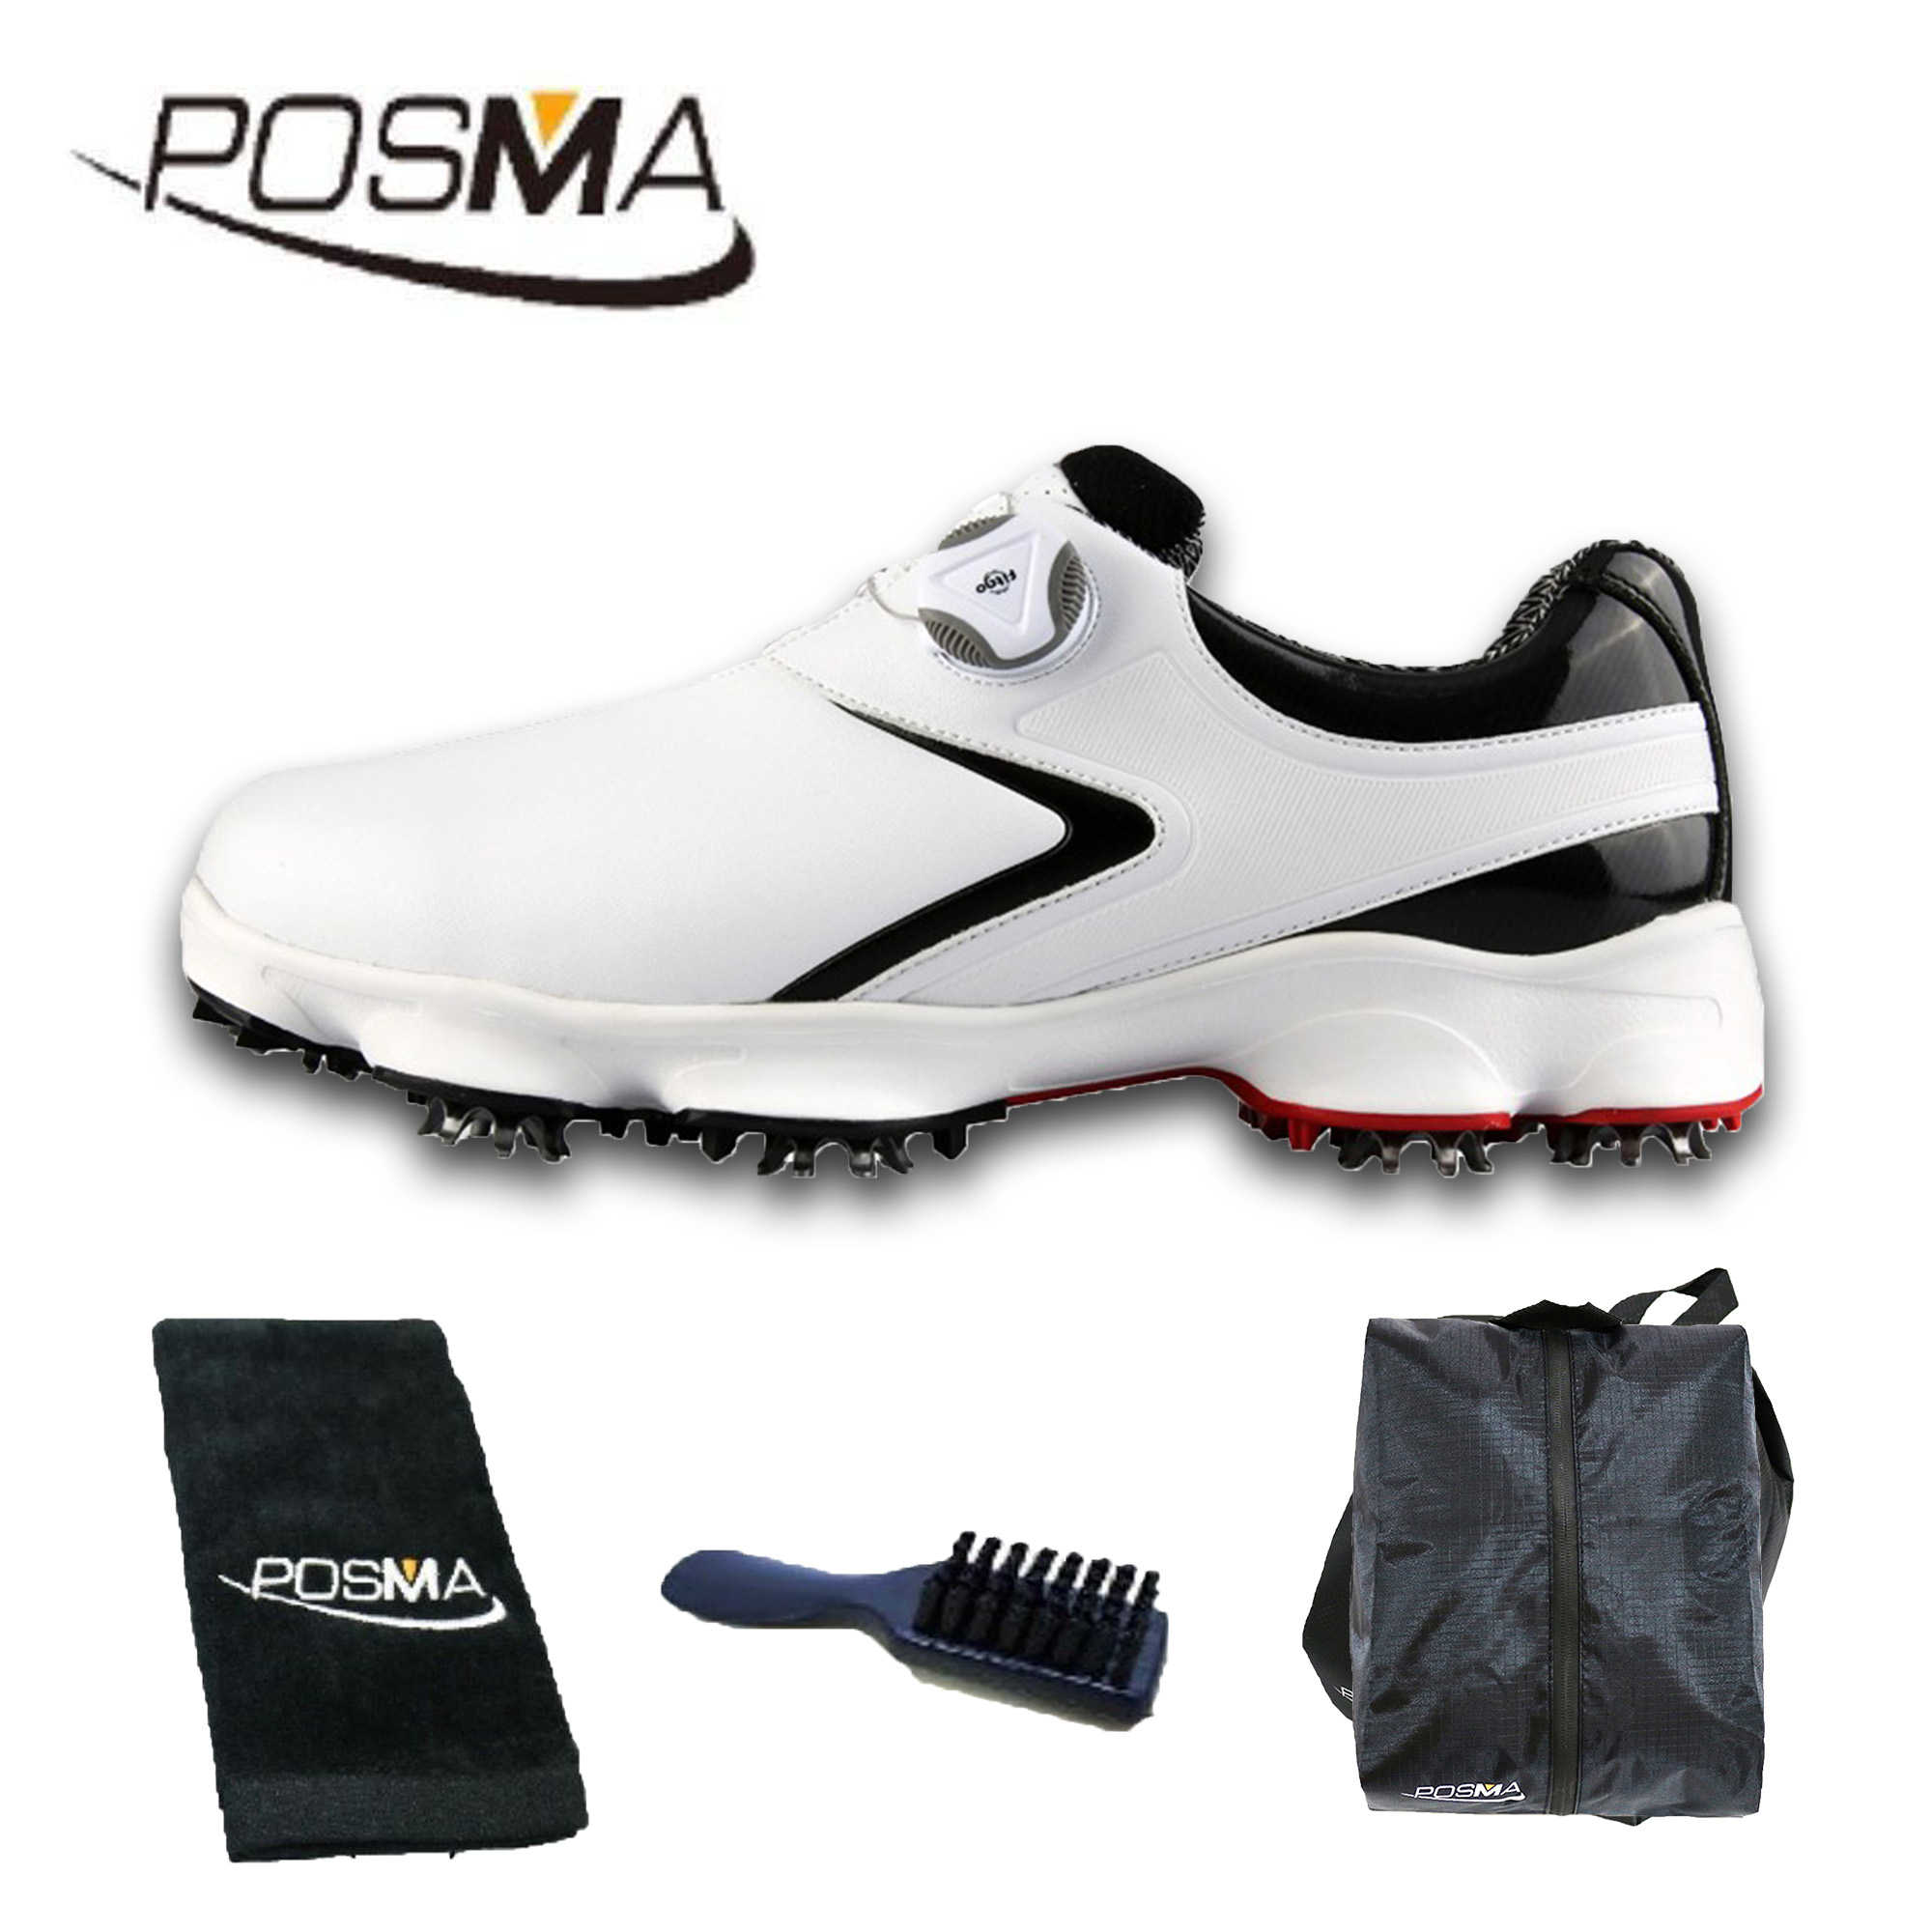 高爾夫男士球鞋 寬版鞋底 旋轉鞋帶 防水透氣  GSH125 白 黑 配POSMA鞋包 2合1清潔刷 高爾夫球毛巾